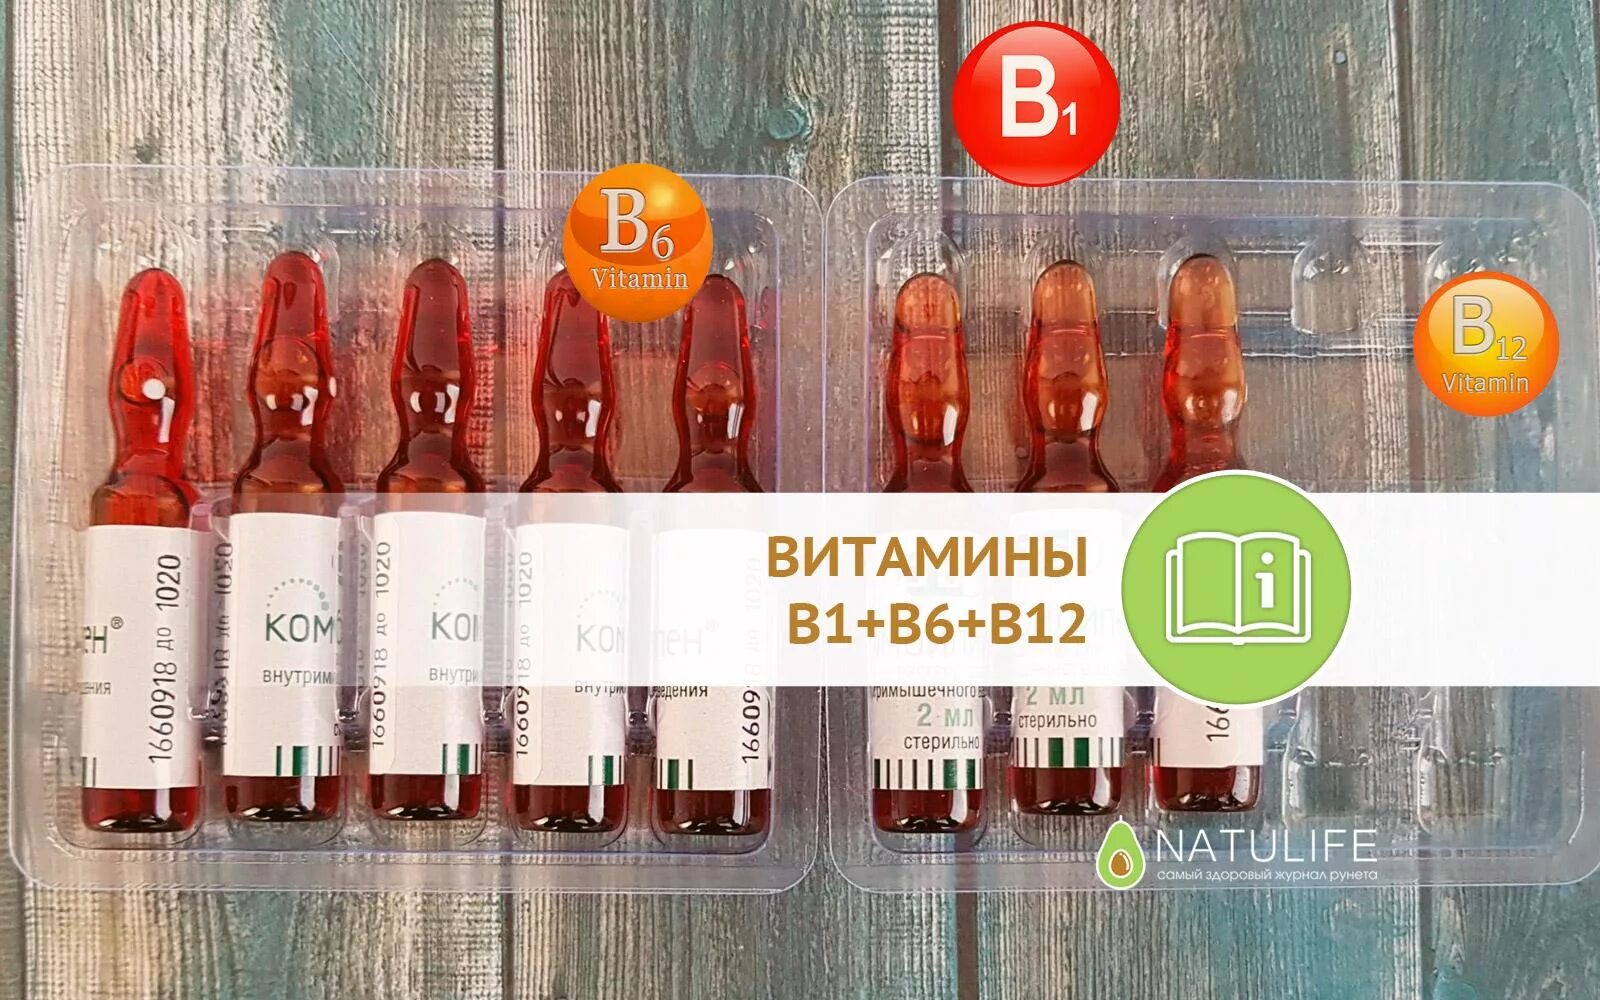 Как часто можно делать уколы витамины. Витамины б1 б6 уколы. Комплекс витаминов б1 б6 б12 в ампулах. B1 b6 b12 витамины в ампулах JN pfgjz. Комплекс б1 б6 б12 уколы витамины.